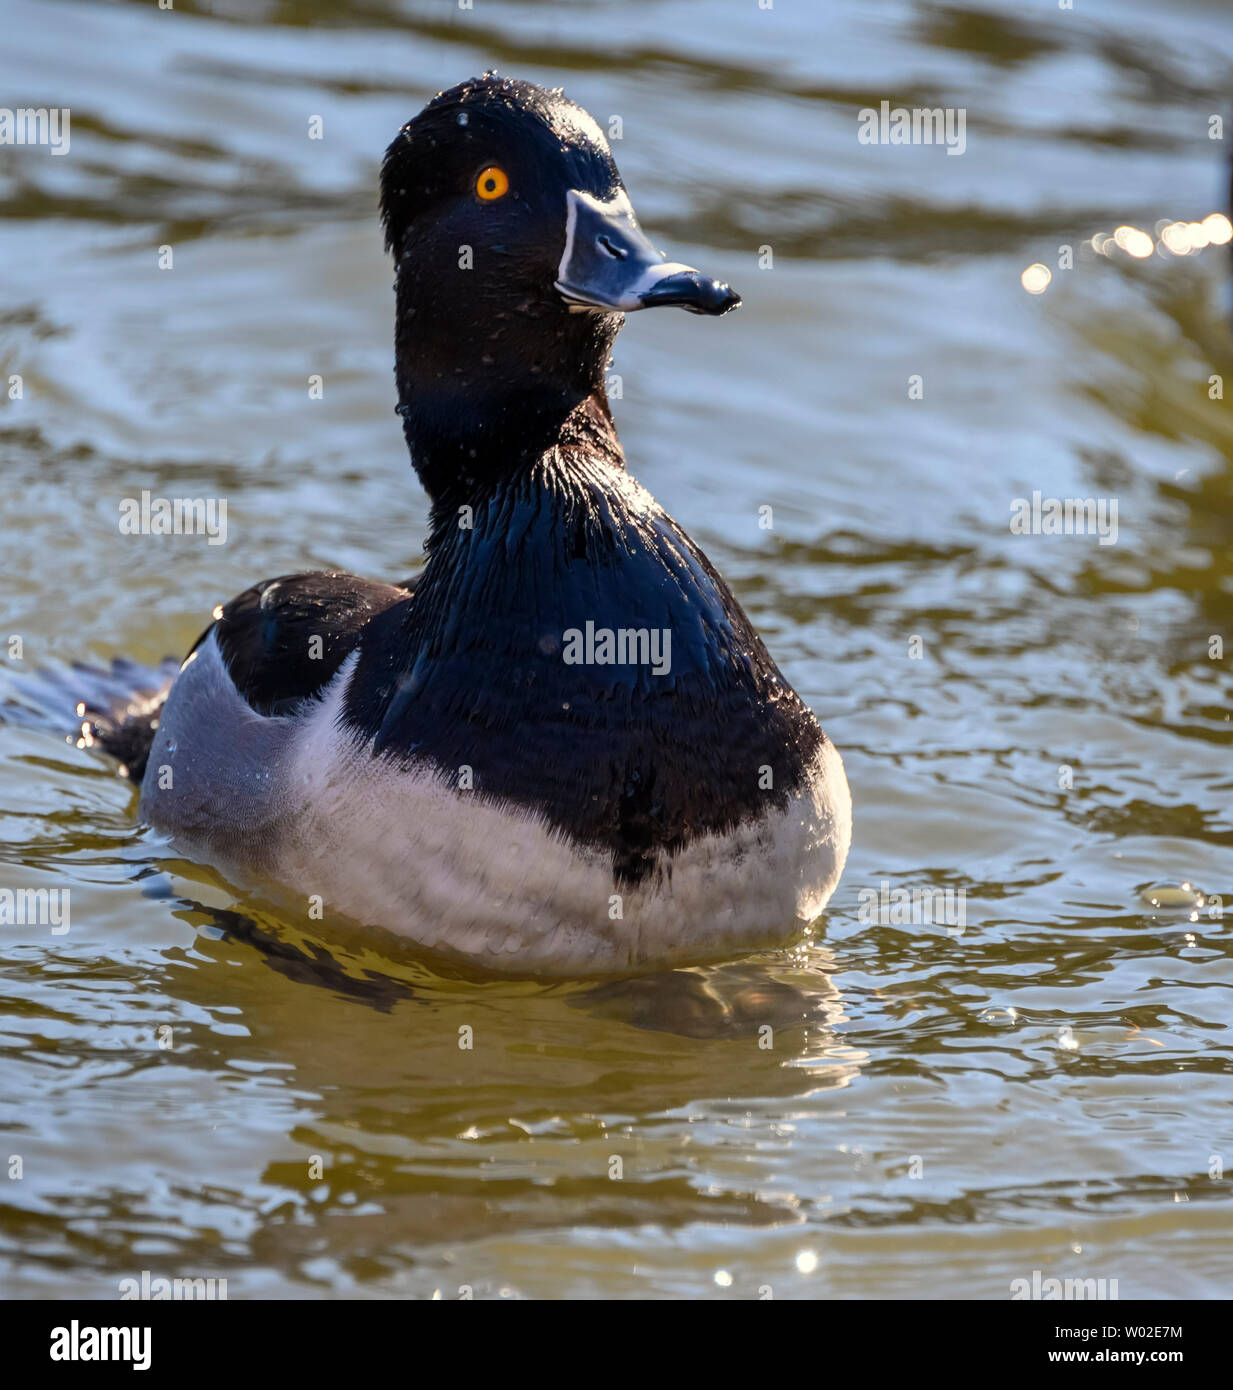 Magnifique canard mâle à col annulaire nageant dans le lac. Oiseau noir et gris. Note grise à rayures et yeux jaunes intenses. Anneau rouge autour du cou. Ensoleillé Banque D'Images